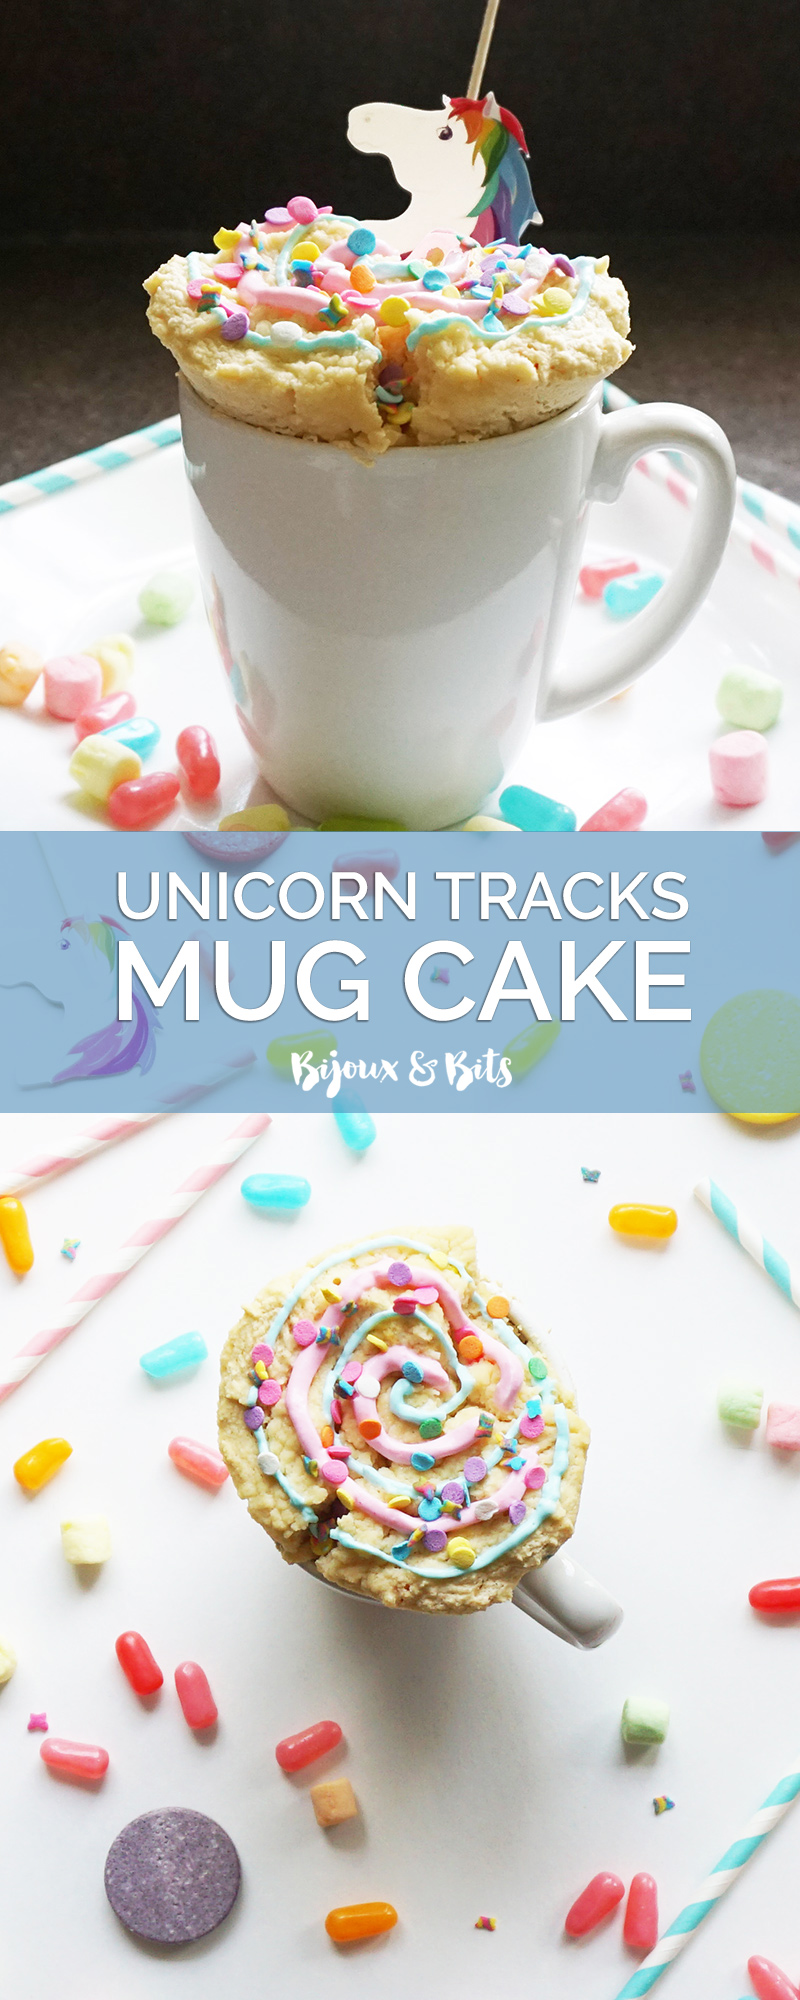 Unicorn tracks mug cake recipe from @bijouxandbits